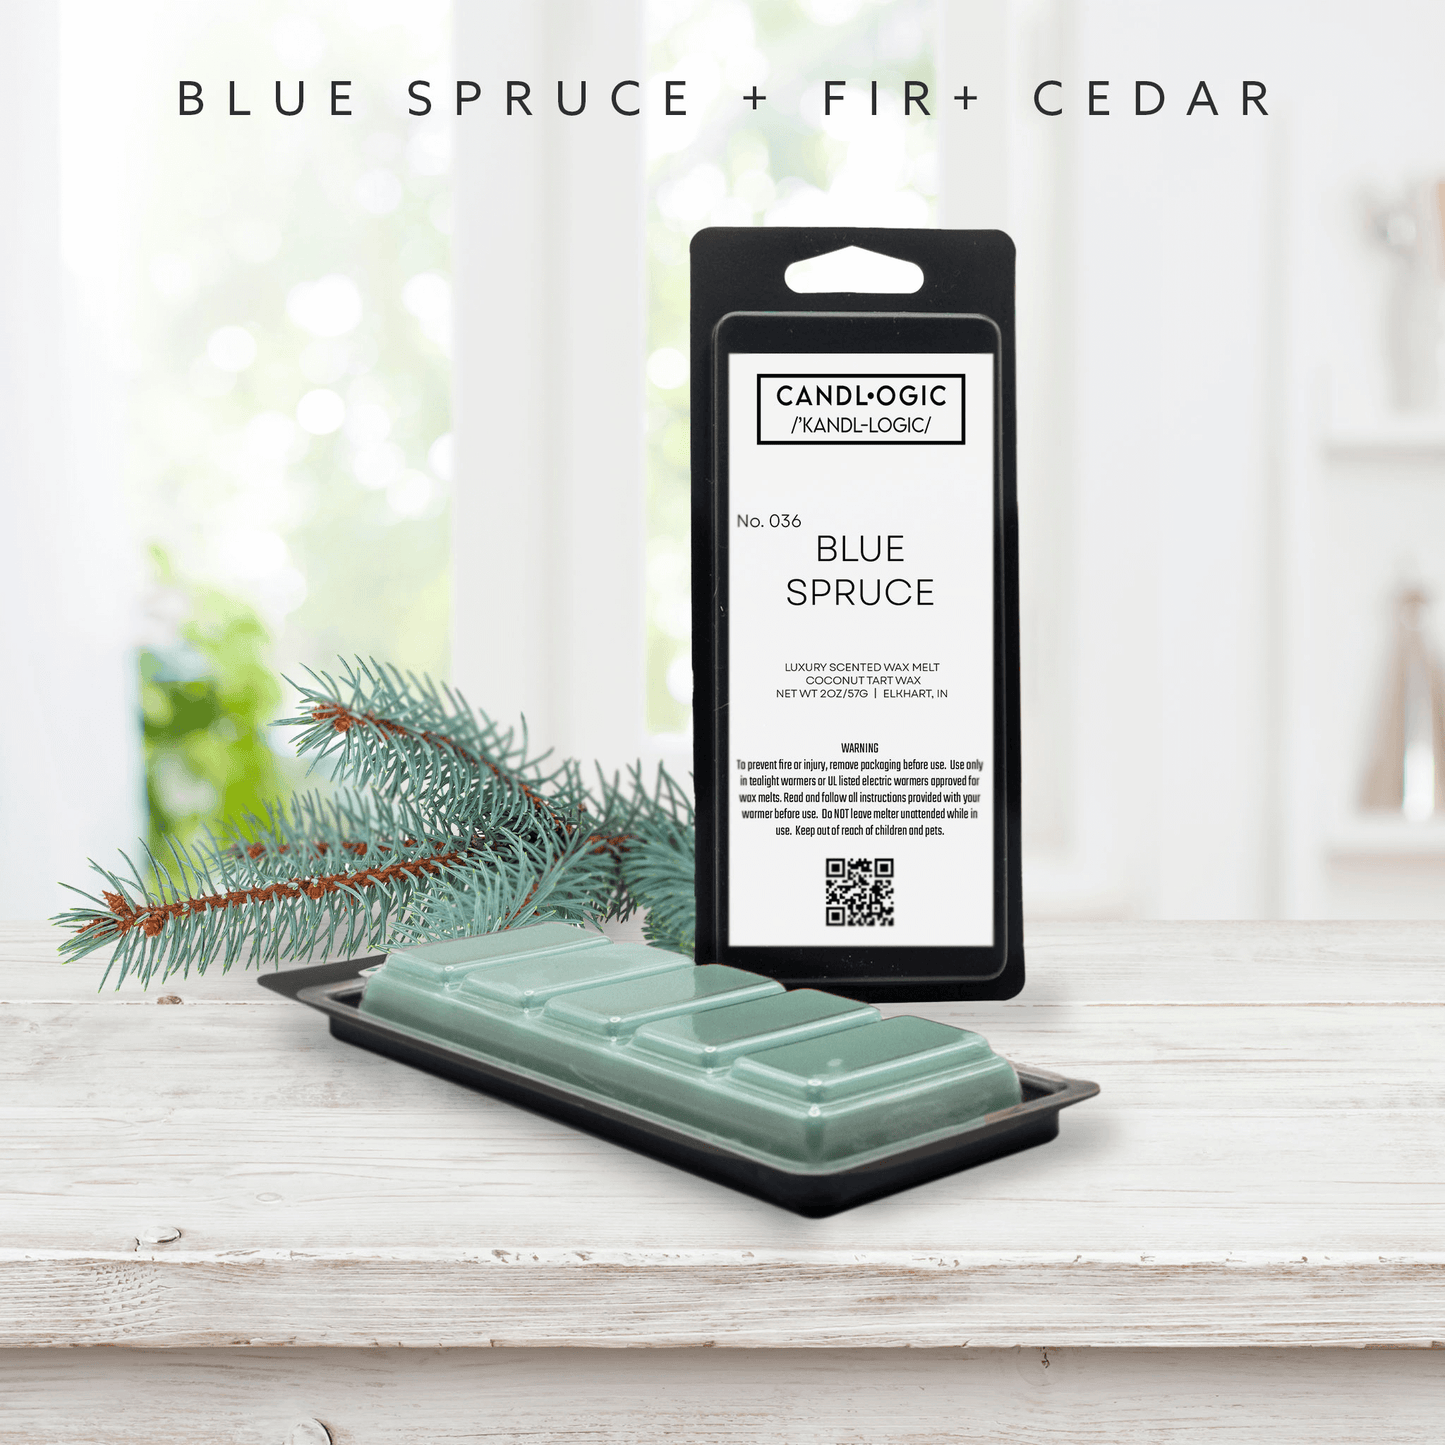 No. 036 Blue Spruce wax melt - Blue Spruce, Fir & Cedar